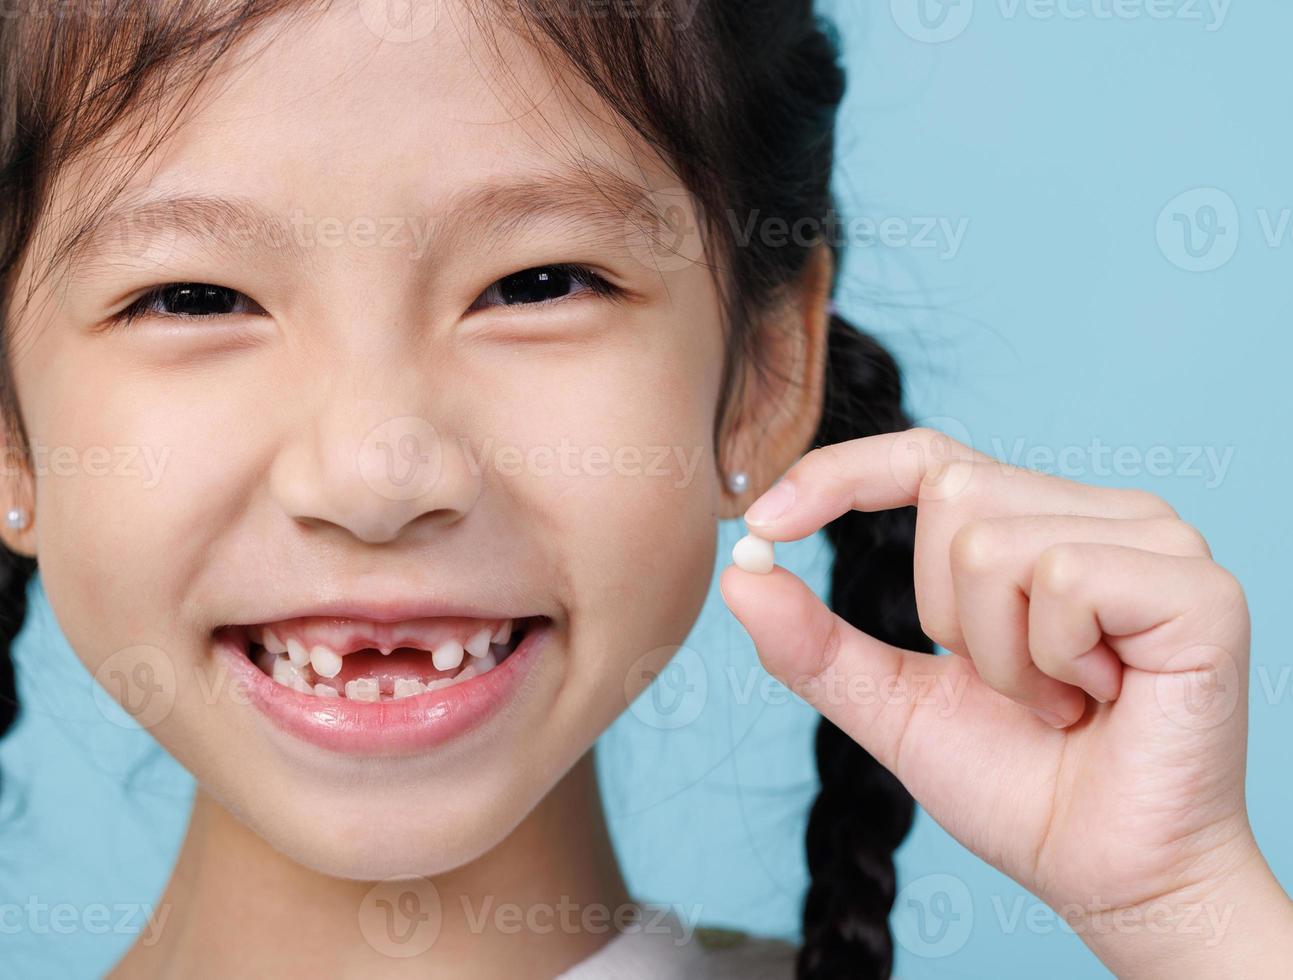 menina criança asiática sorrindo com dentes soltos, odontologia e conceito de cuidados de saúde foto